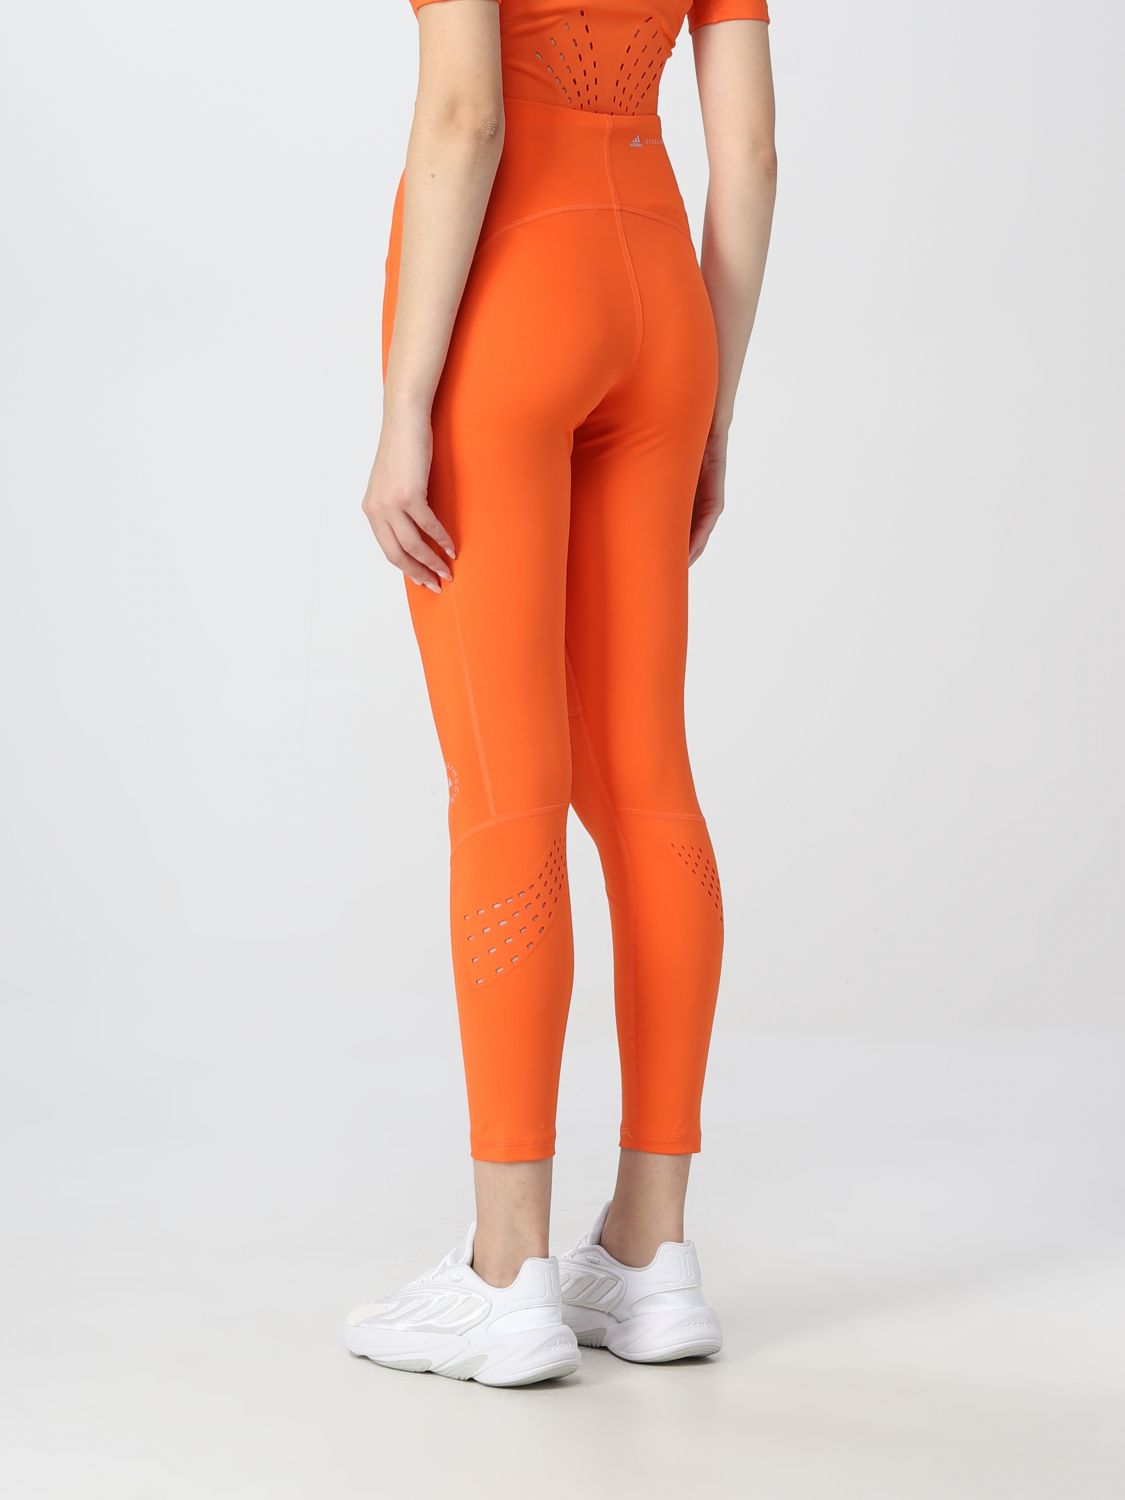 Pantalone Adidas By Stella Mccartney: Pantalone Adidas By Stella Mccartney donna arancione 3